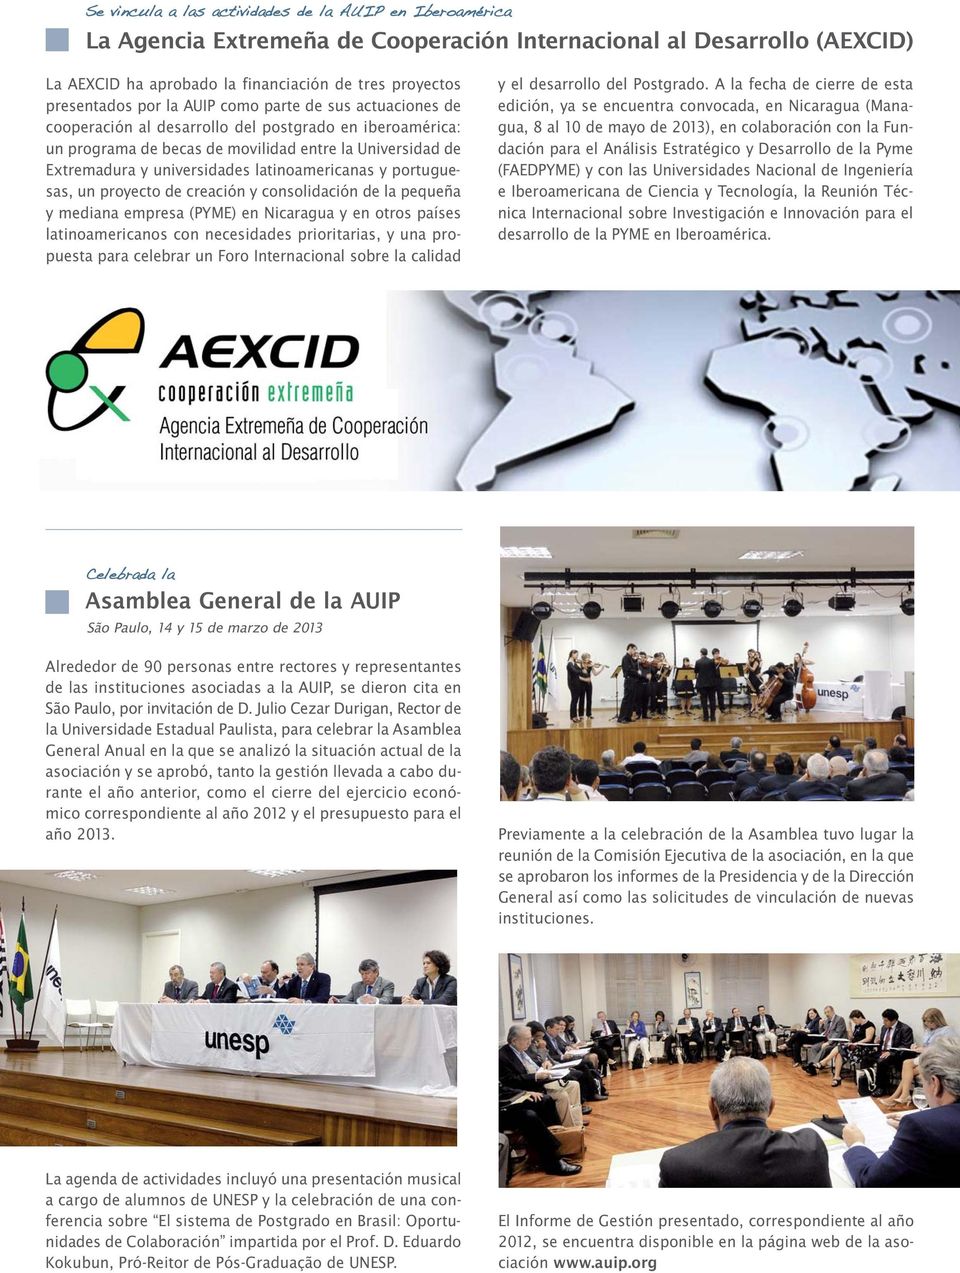 latinoamericanas y portuguesas, un proyecto de creación y consolidación de la pequeña y mediana empresa (PYME) en Nicaragua y en otros países latinoamericanos con necesidades prioritarias, y una